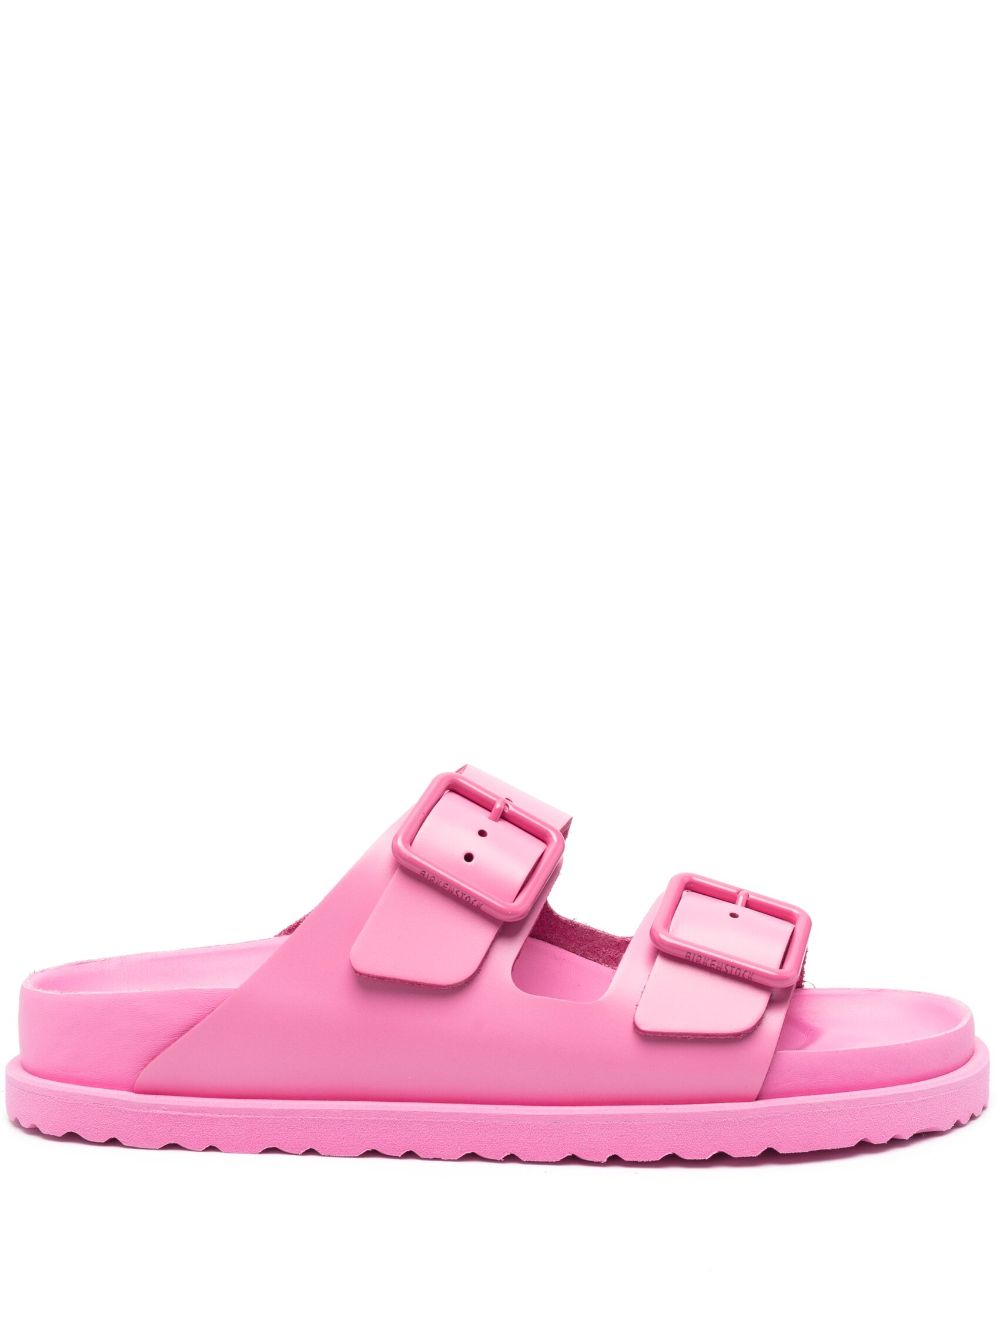 Birkenstock Arizona double-buckled sandals - Pink von Birkenstock